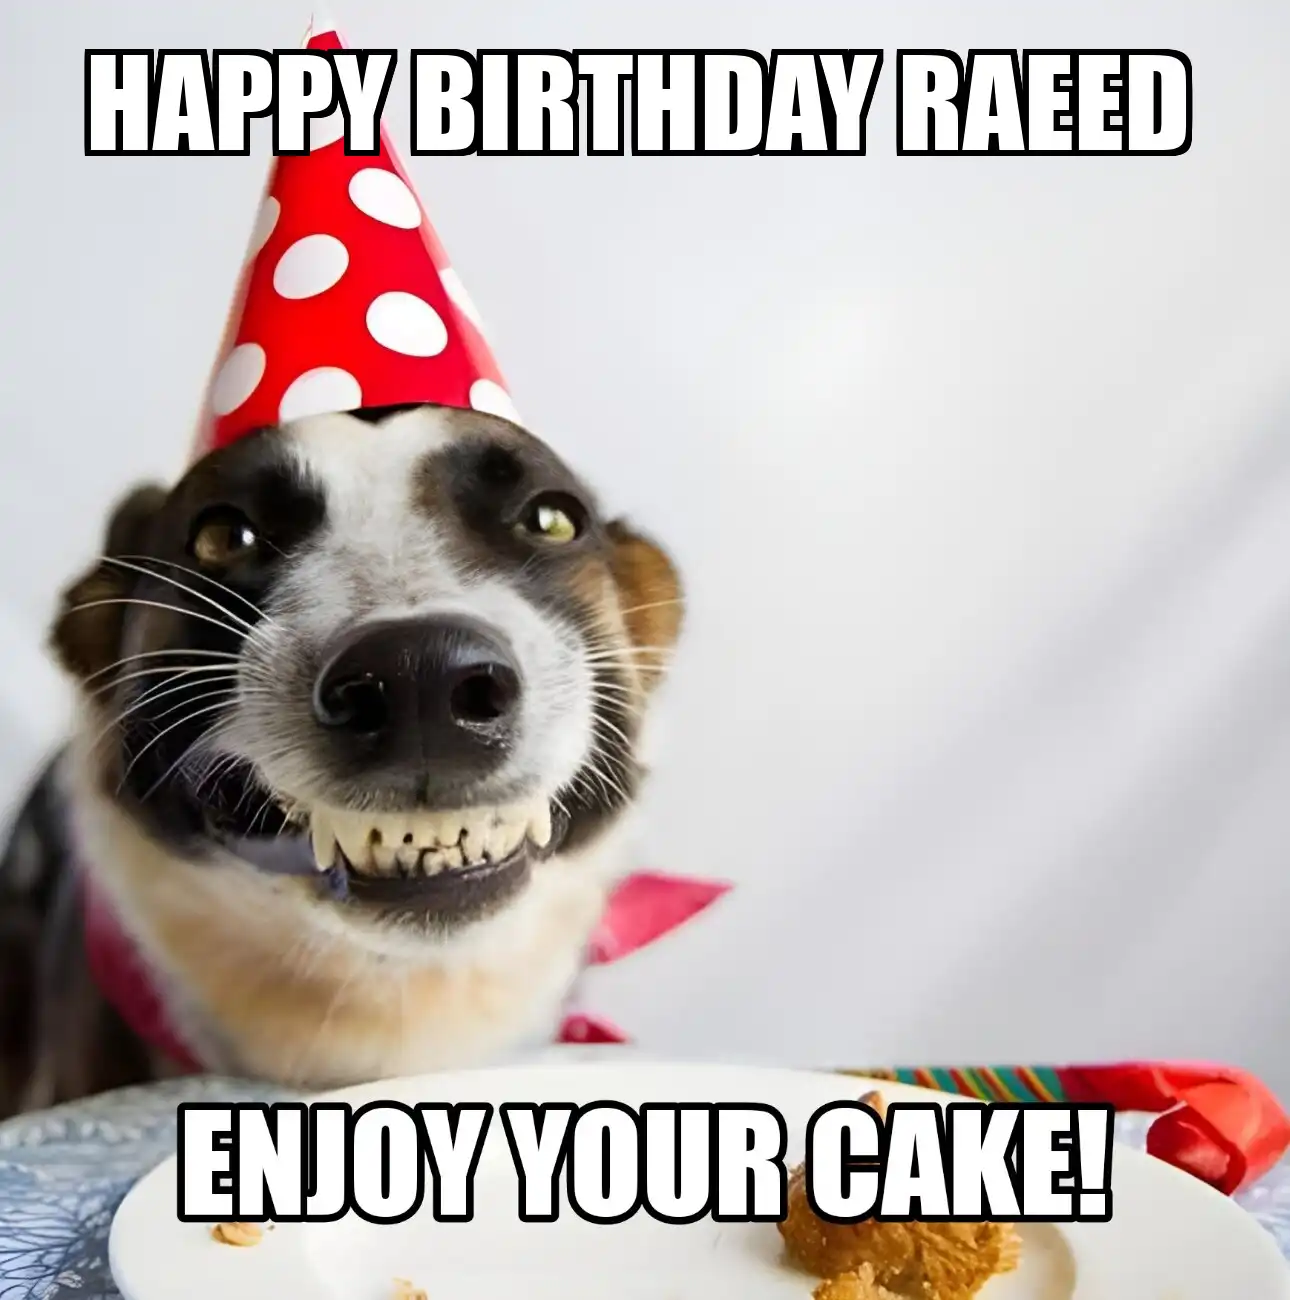 Happy Birthday Raeed Enjoy Your Cake Dog Meme